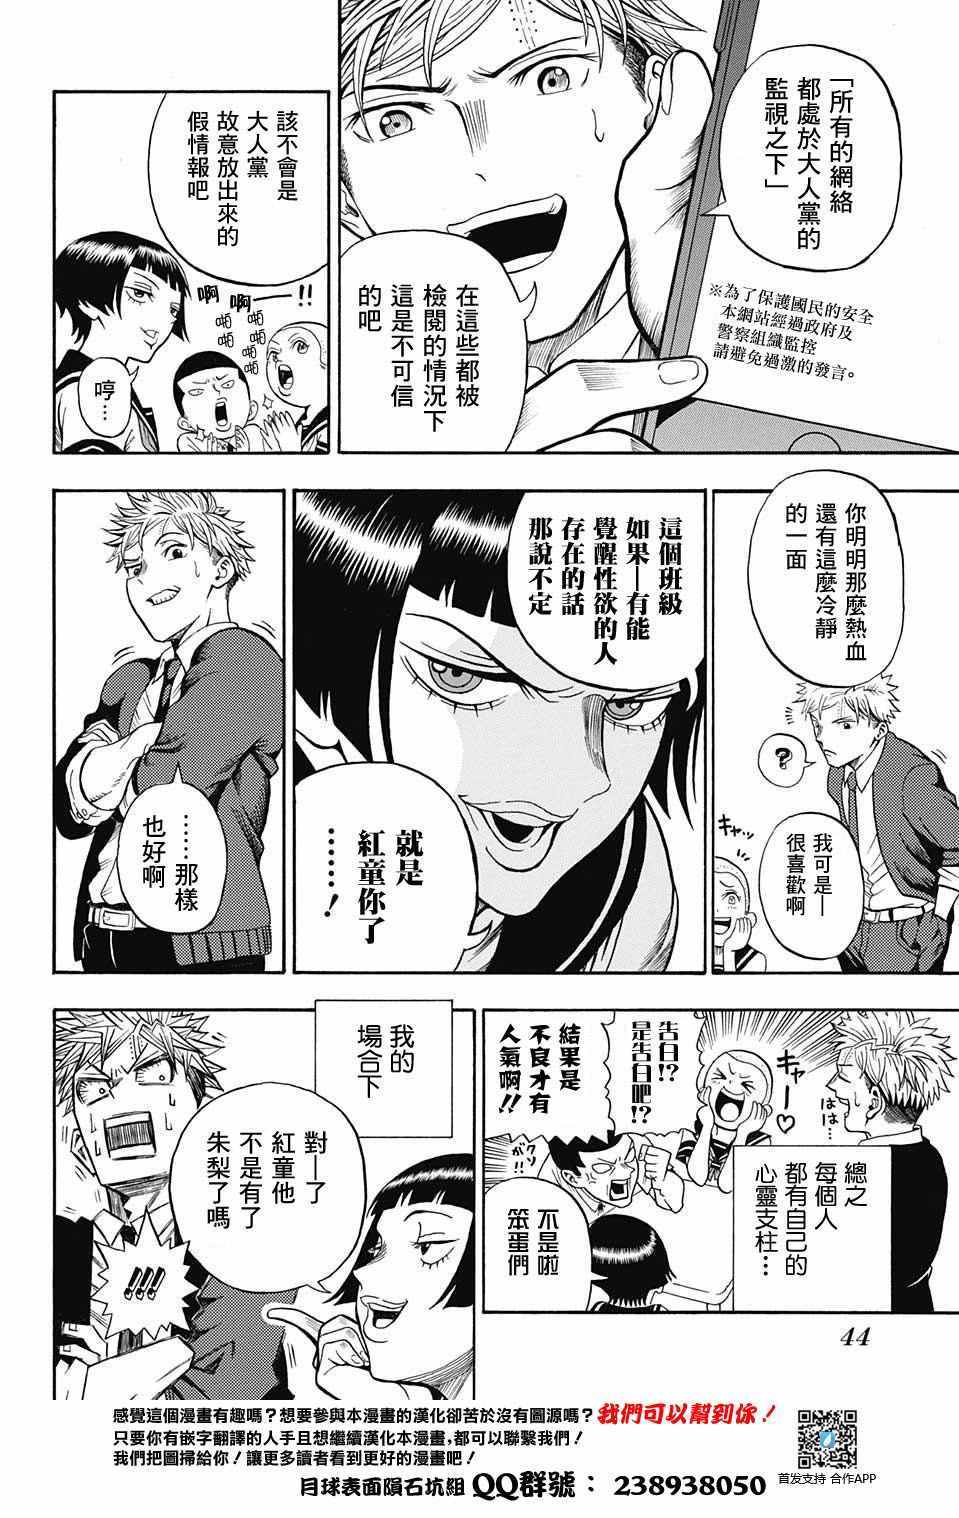 U19漫畫001話 第22頁 U話劇情 看漫畫